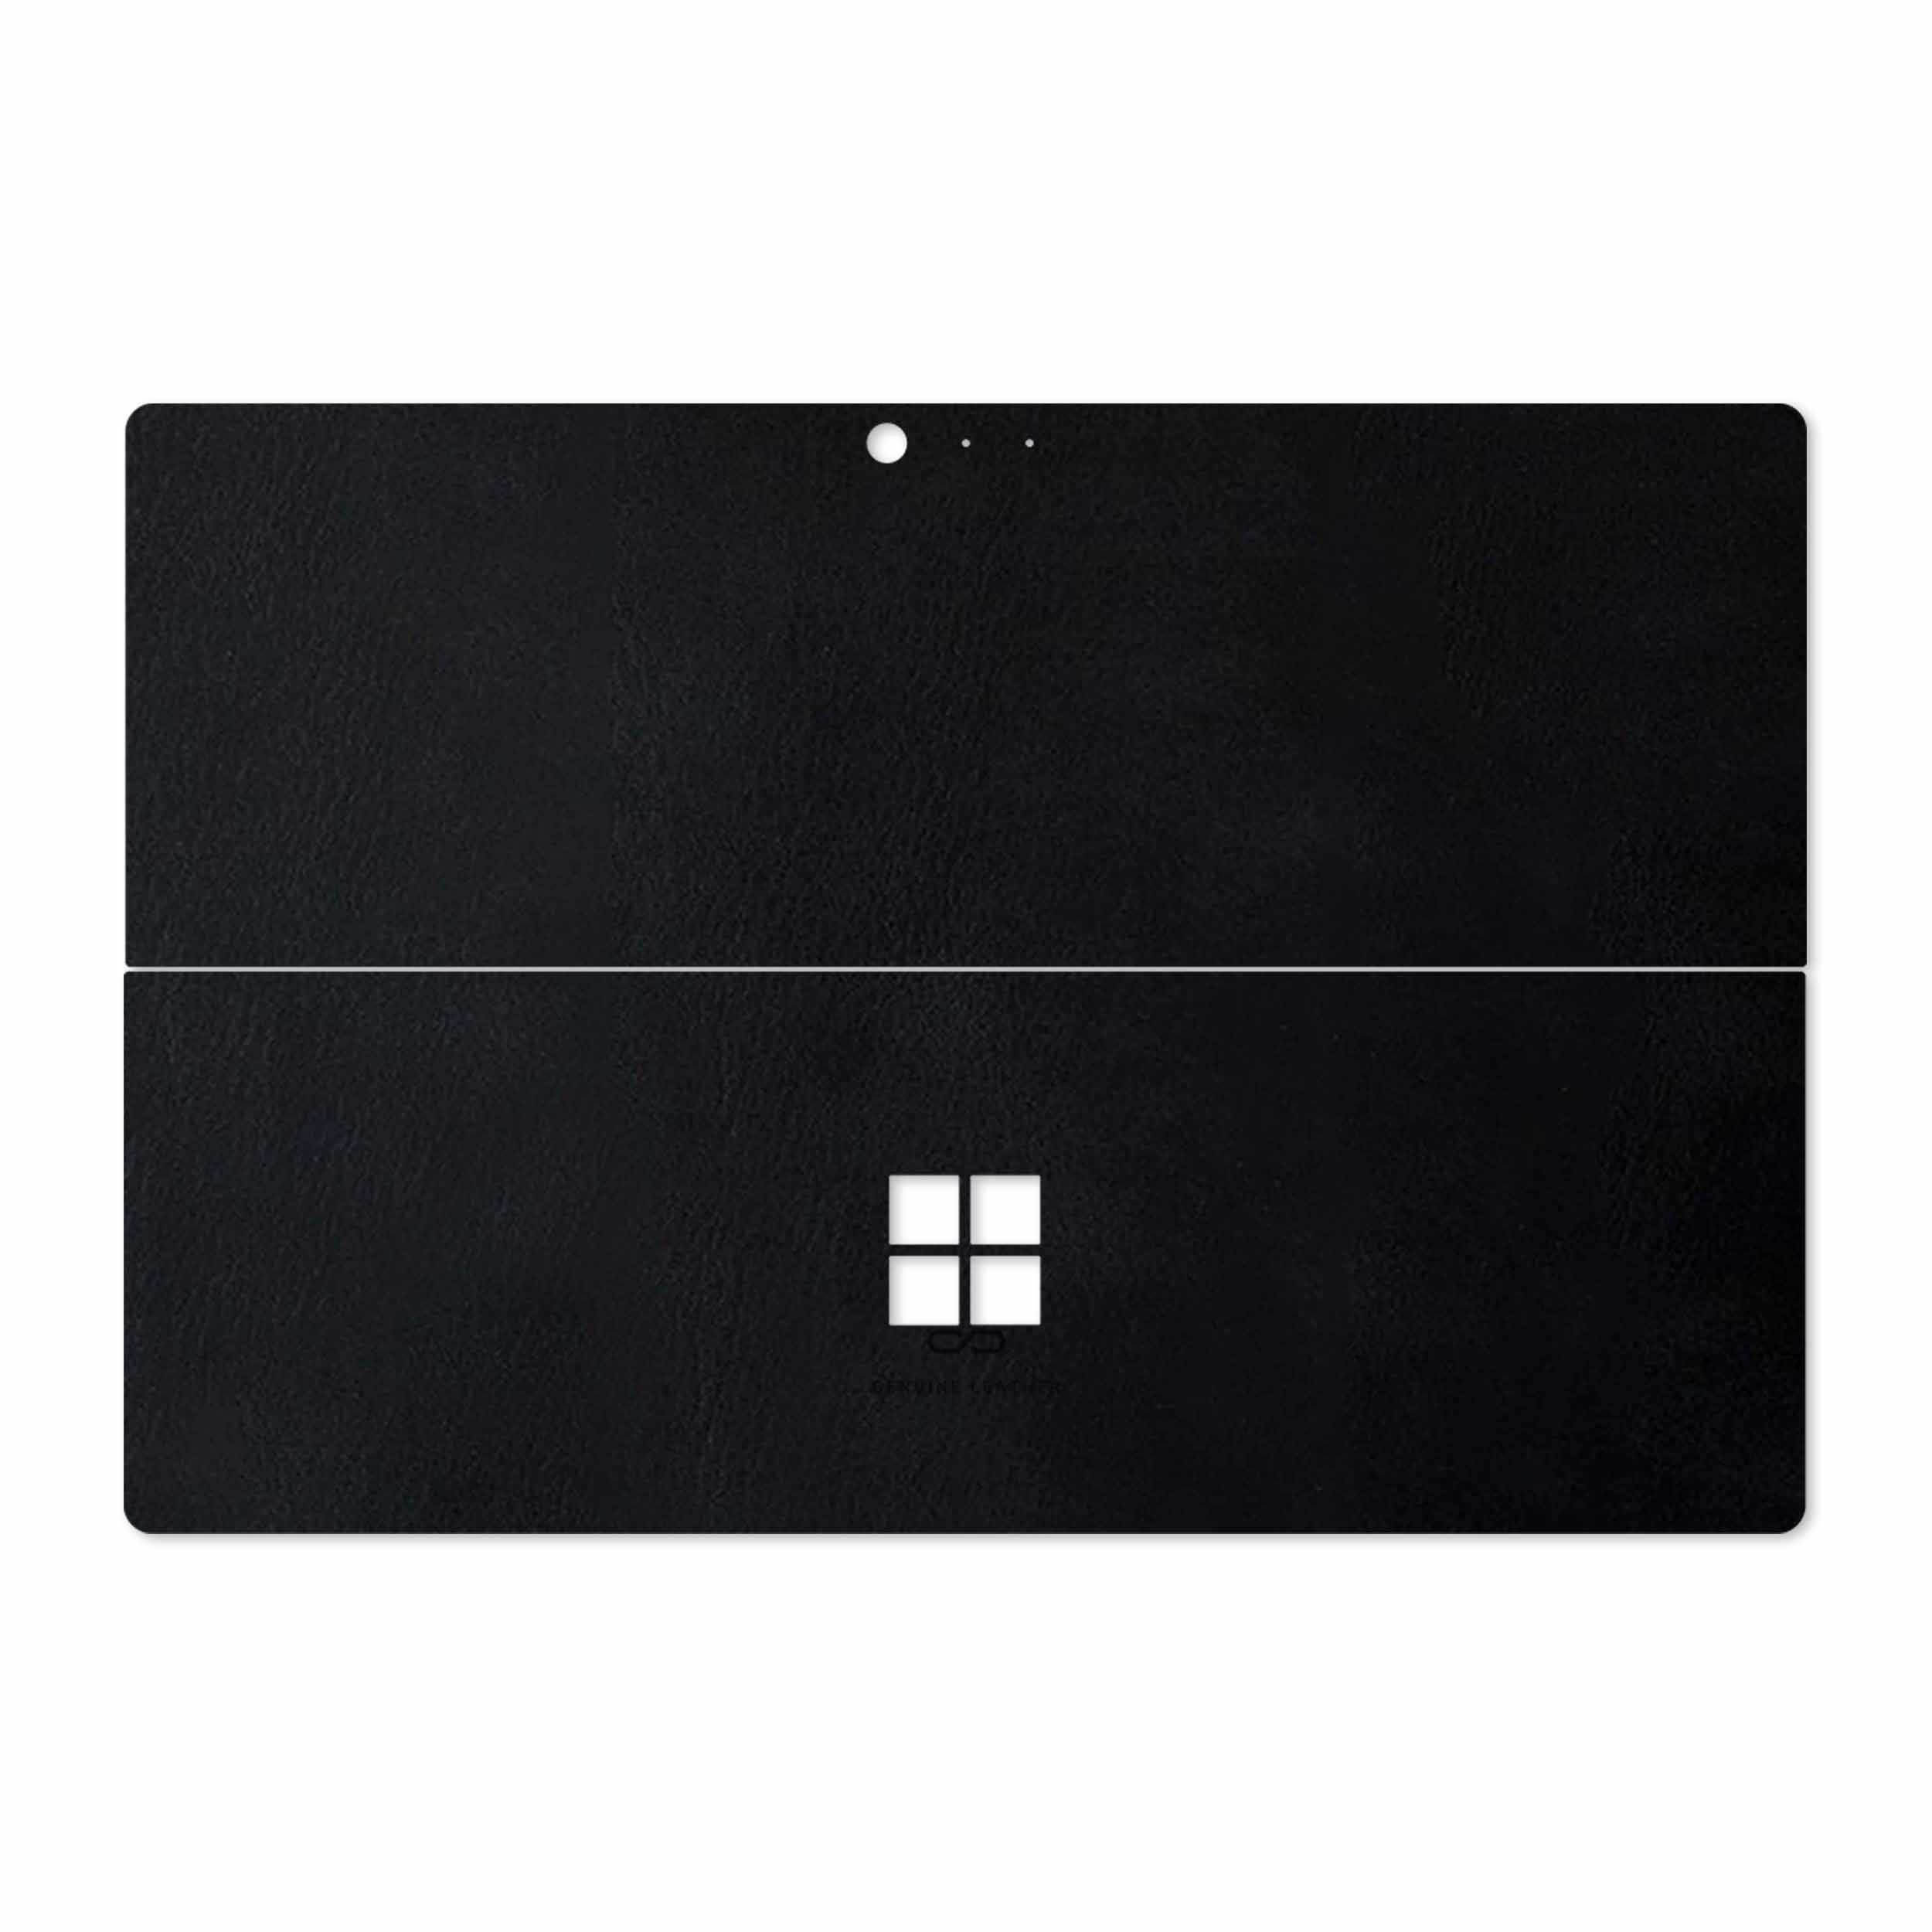 برچسب پوششی ماهوت مدل Graphite Buffalo Leather مناسب برای تبلت مایکروسافت Surface Pro 4 2015